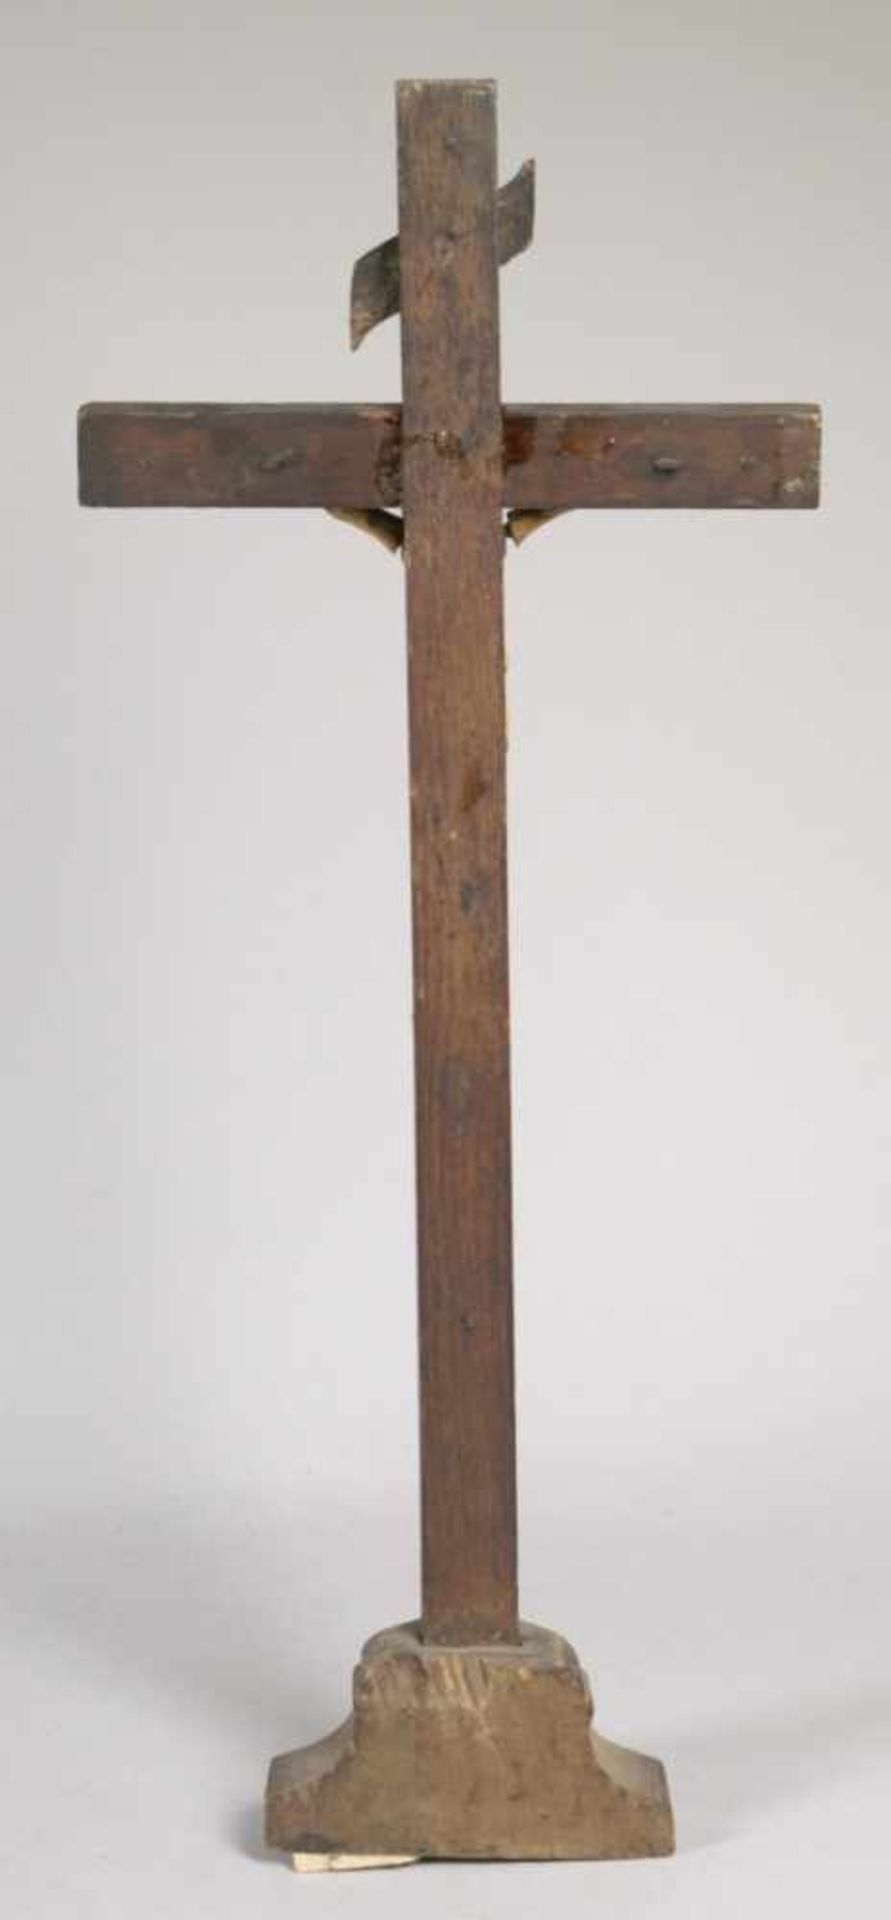 Holz-Standkreuz, alpenländisch, 17./18. Jh., barocker Sockel mit schlichtem Kreuz, - Bild 3 aus 4